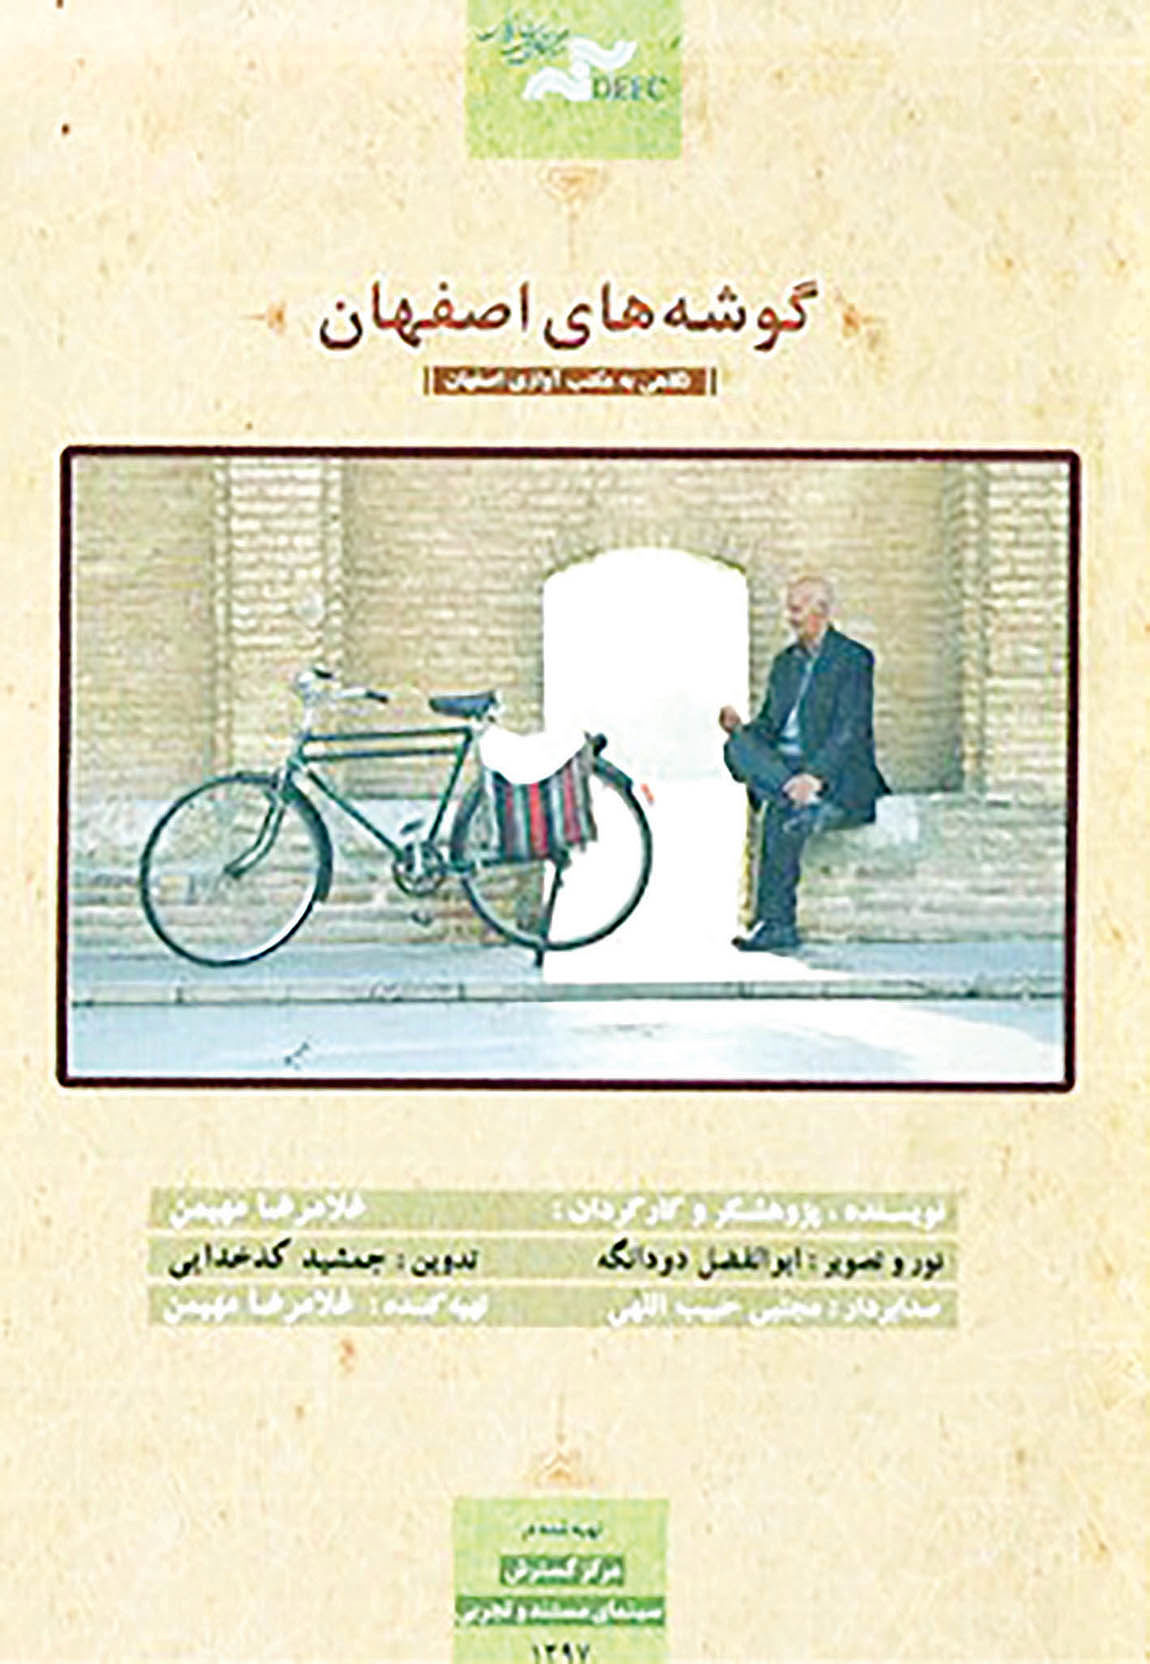 بررسی 90 سال موسیقی اصفهان در شبکه خانگی